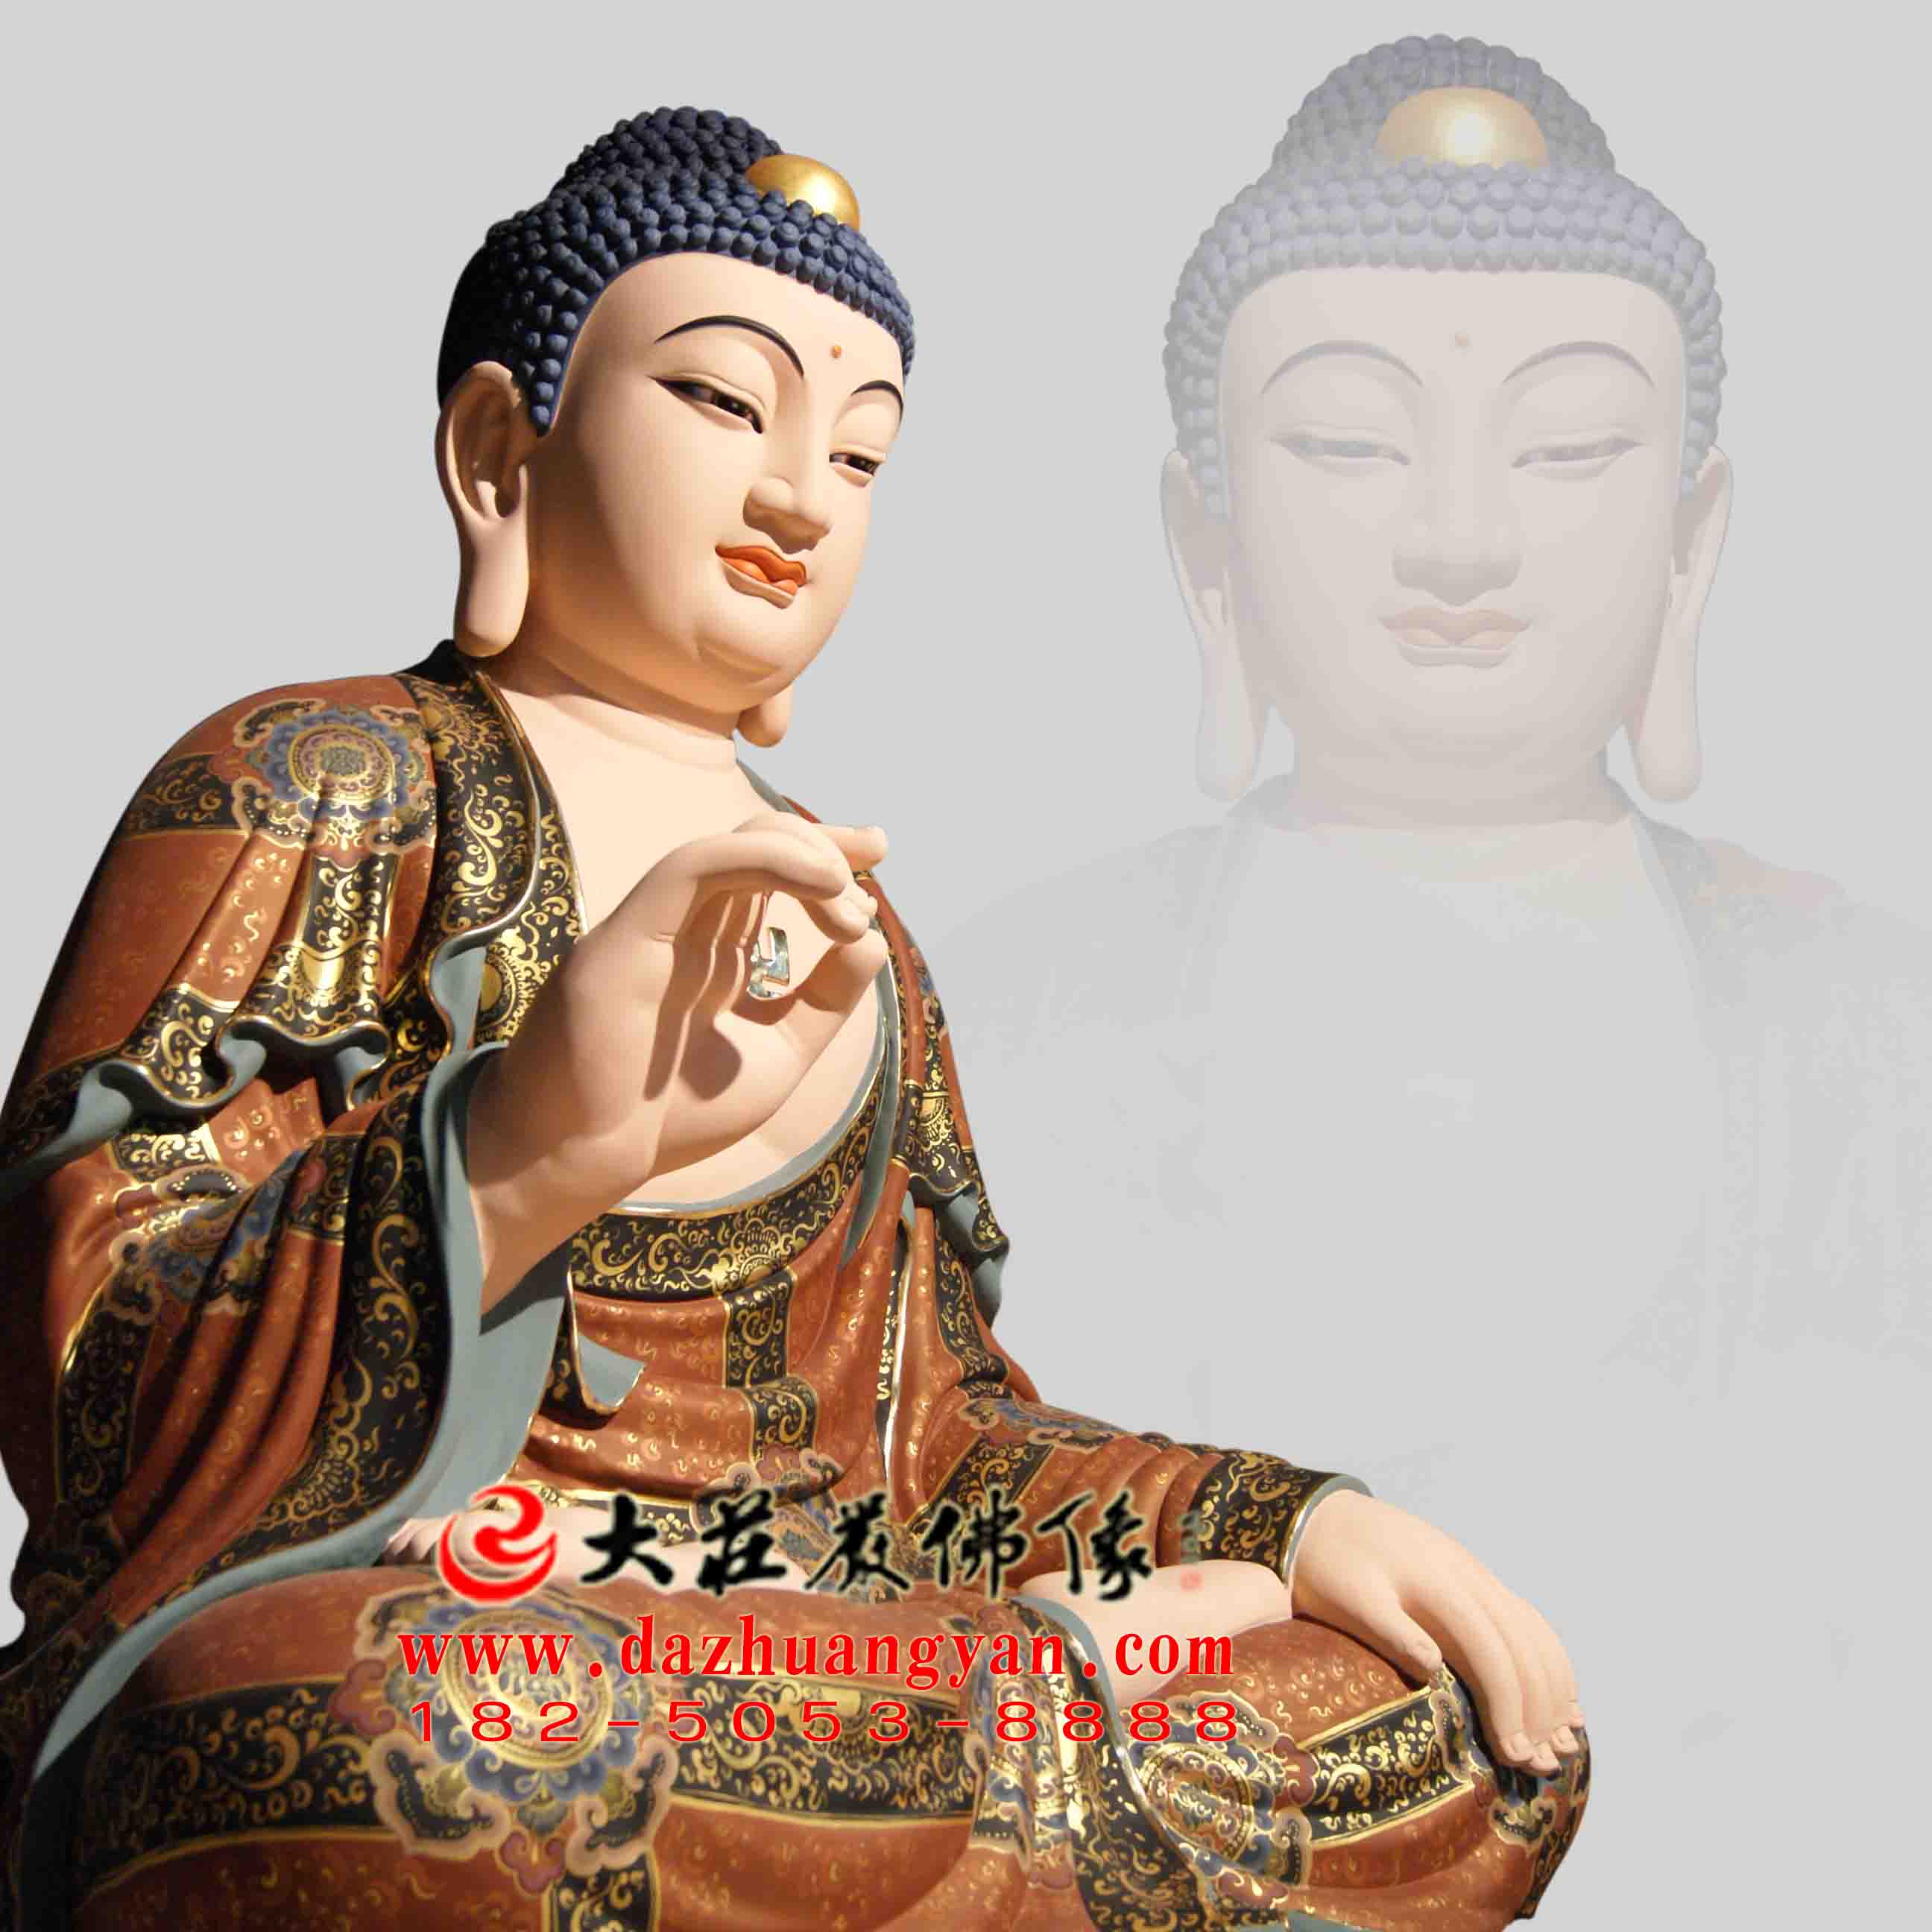 彩绘描金生漆脱胎华严三圣之释迦牟尼佛塑像侧面像